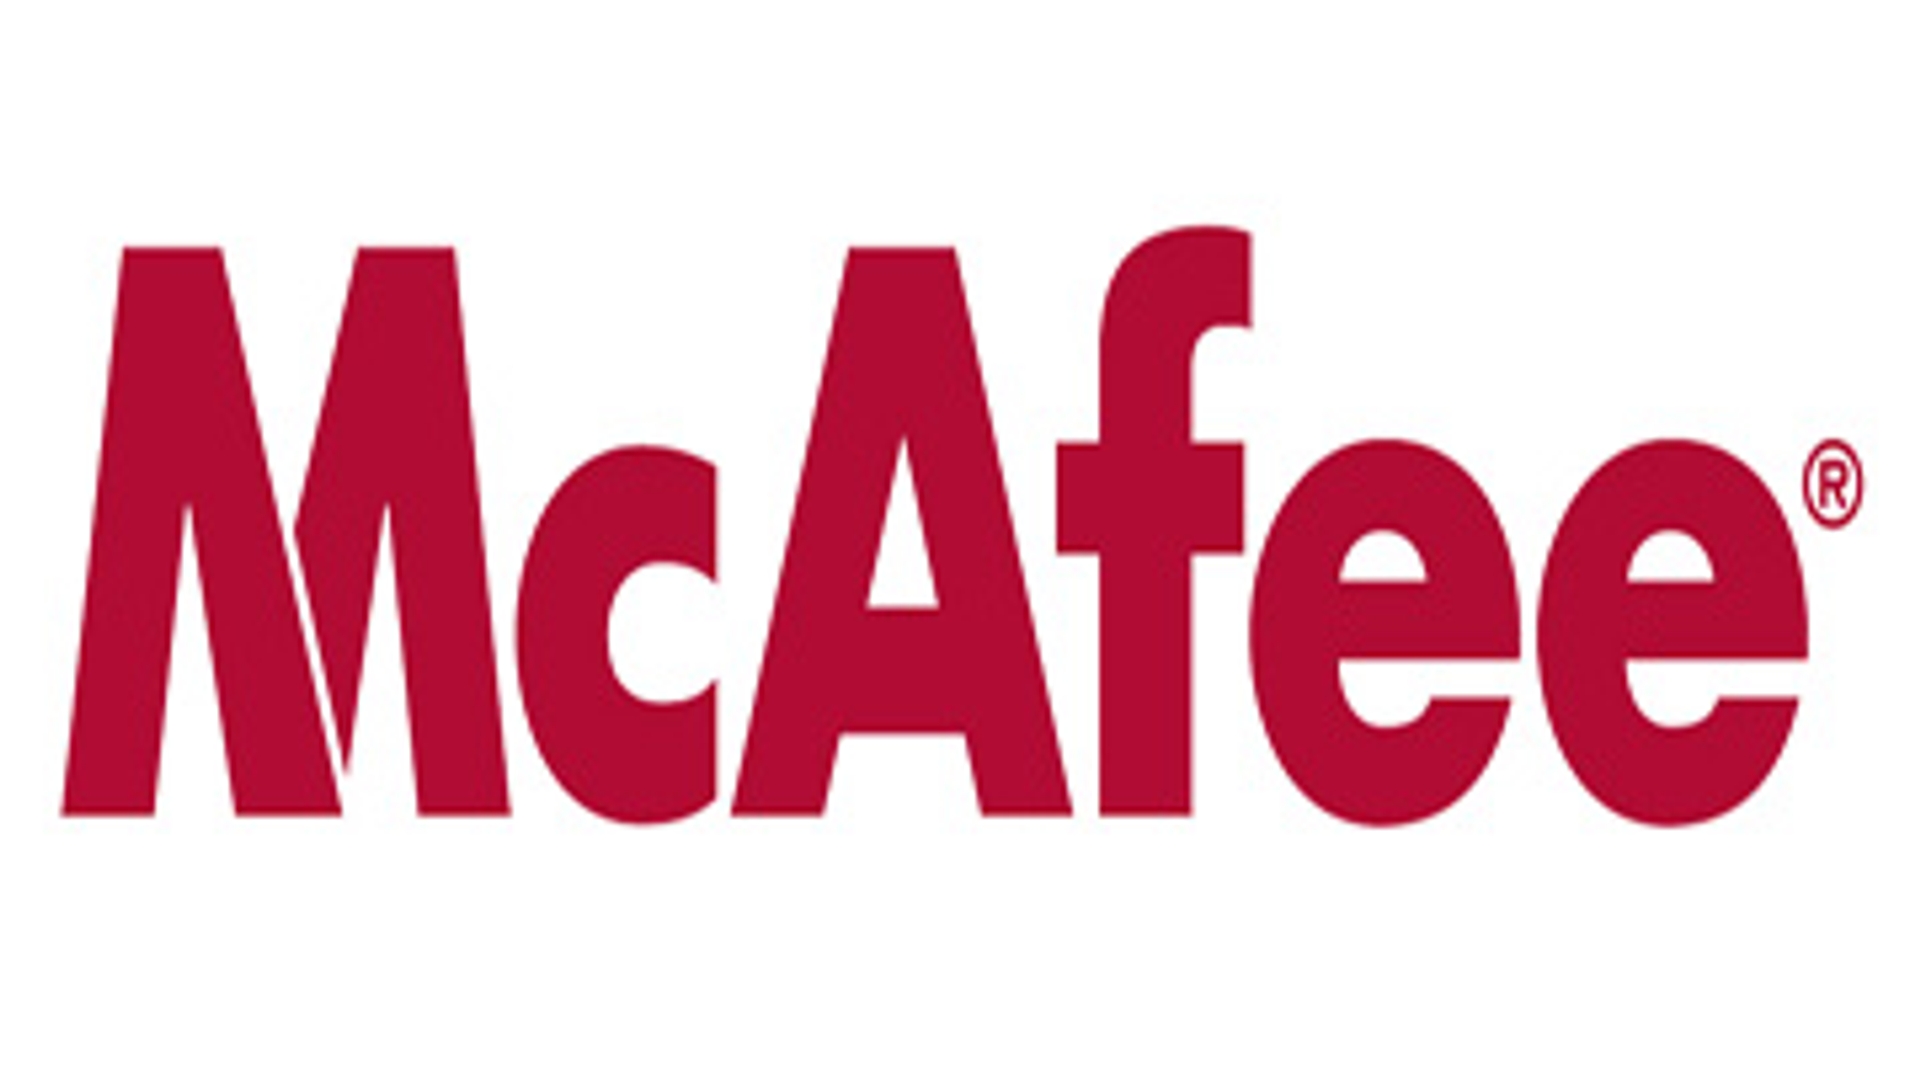 mcafee_logo-groot_02.jpg